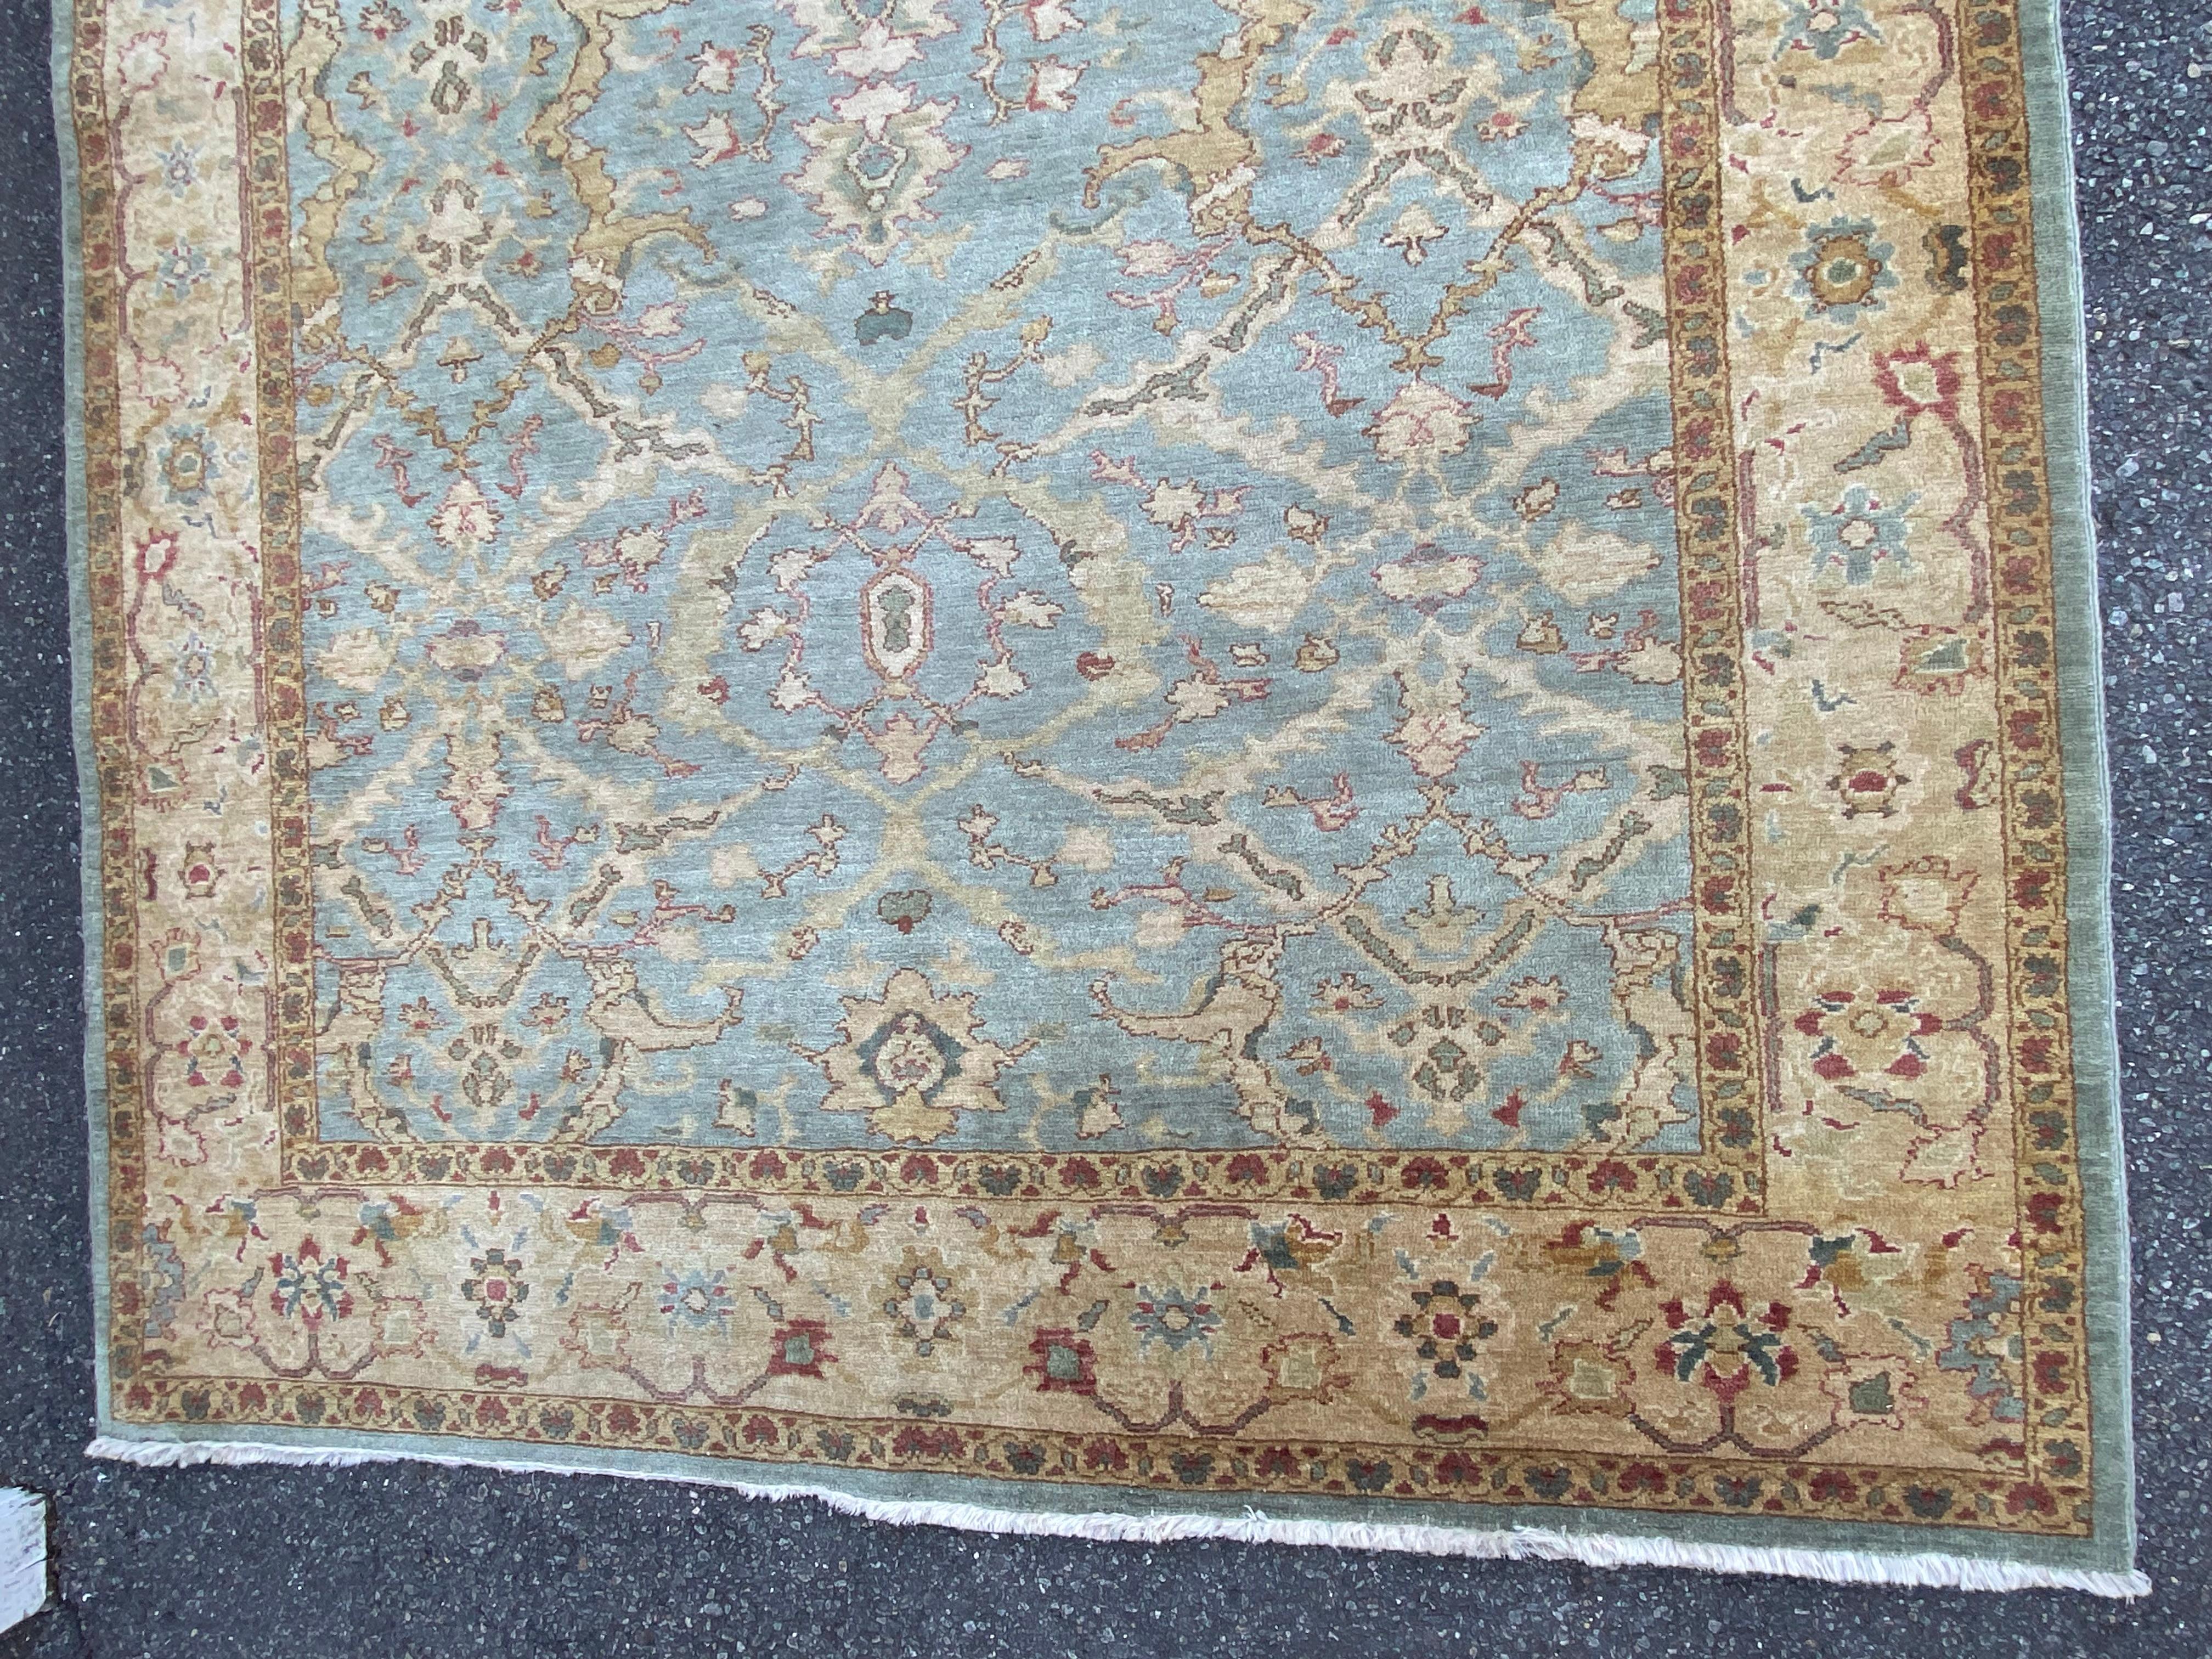 Handgetufteter Sultanabad-Teppich aus persischer Wolle (oder breiter Läufer), wahrscheinlich Mitte/Ende des 20. Jh. in sehr gutem Zustand, mit niedrigem, dicht gewebtem Flor und schönen gedämpften Farben mit blauem Grund, hellbrauner Bordüre und